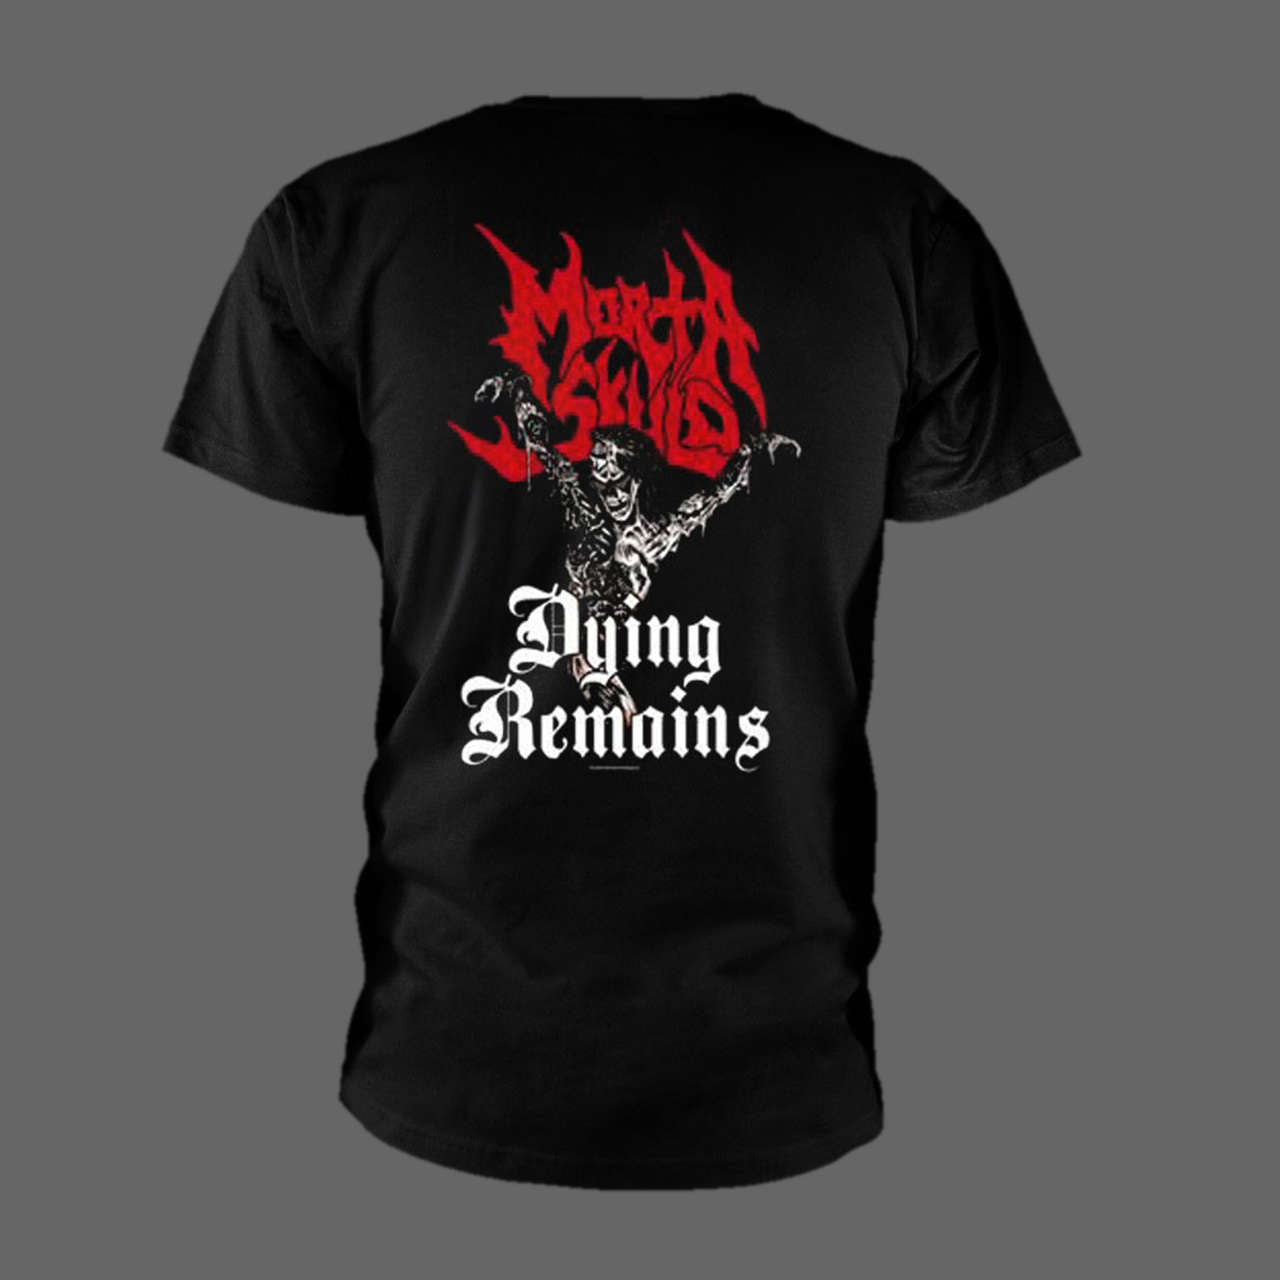 Morta Skuld - Dying Remains (T-Shirt)